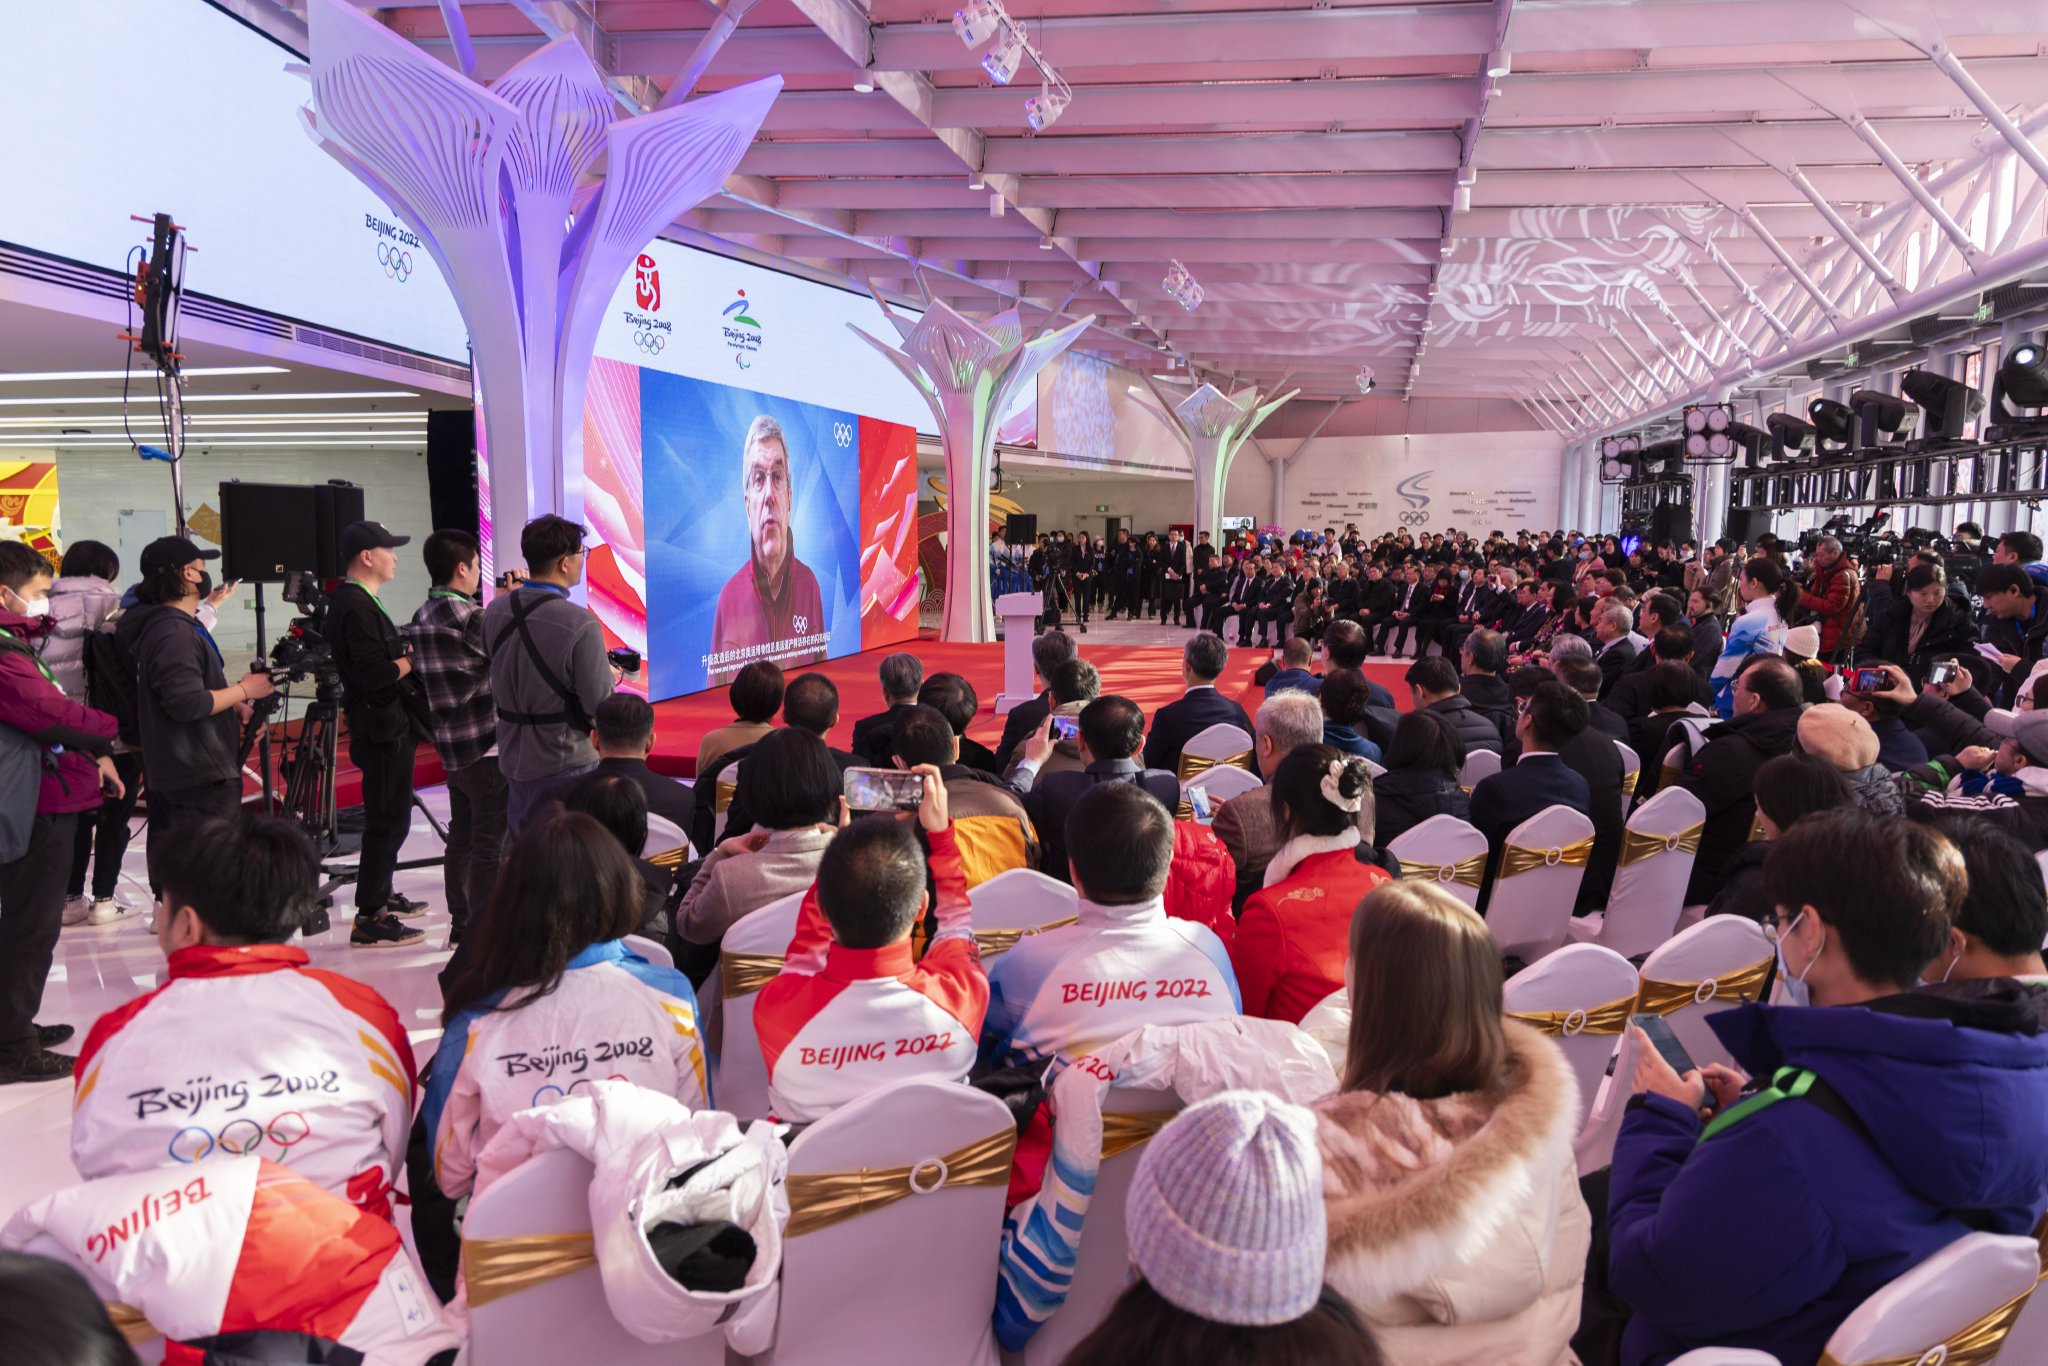 2月3日，北京奧運博物館開館儀式上，國際奧委會主席巴赫發來影片致辭表示祝賀。  新京報記者 陶冉 攝